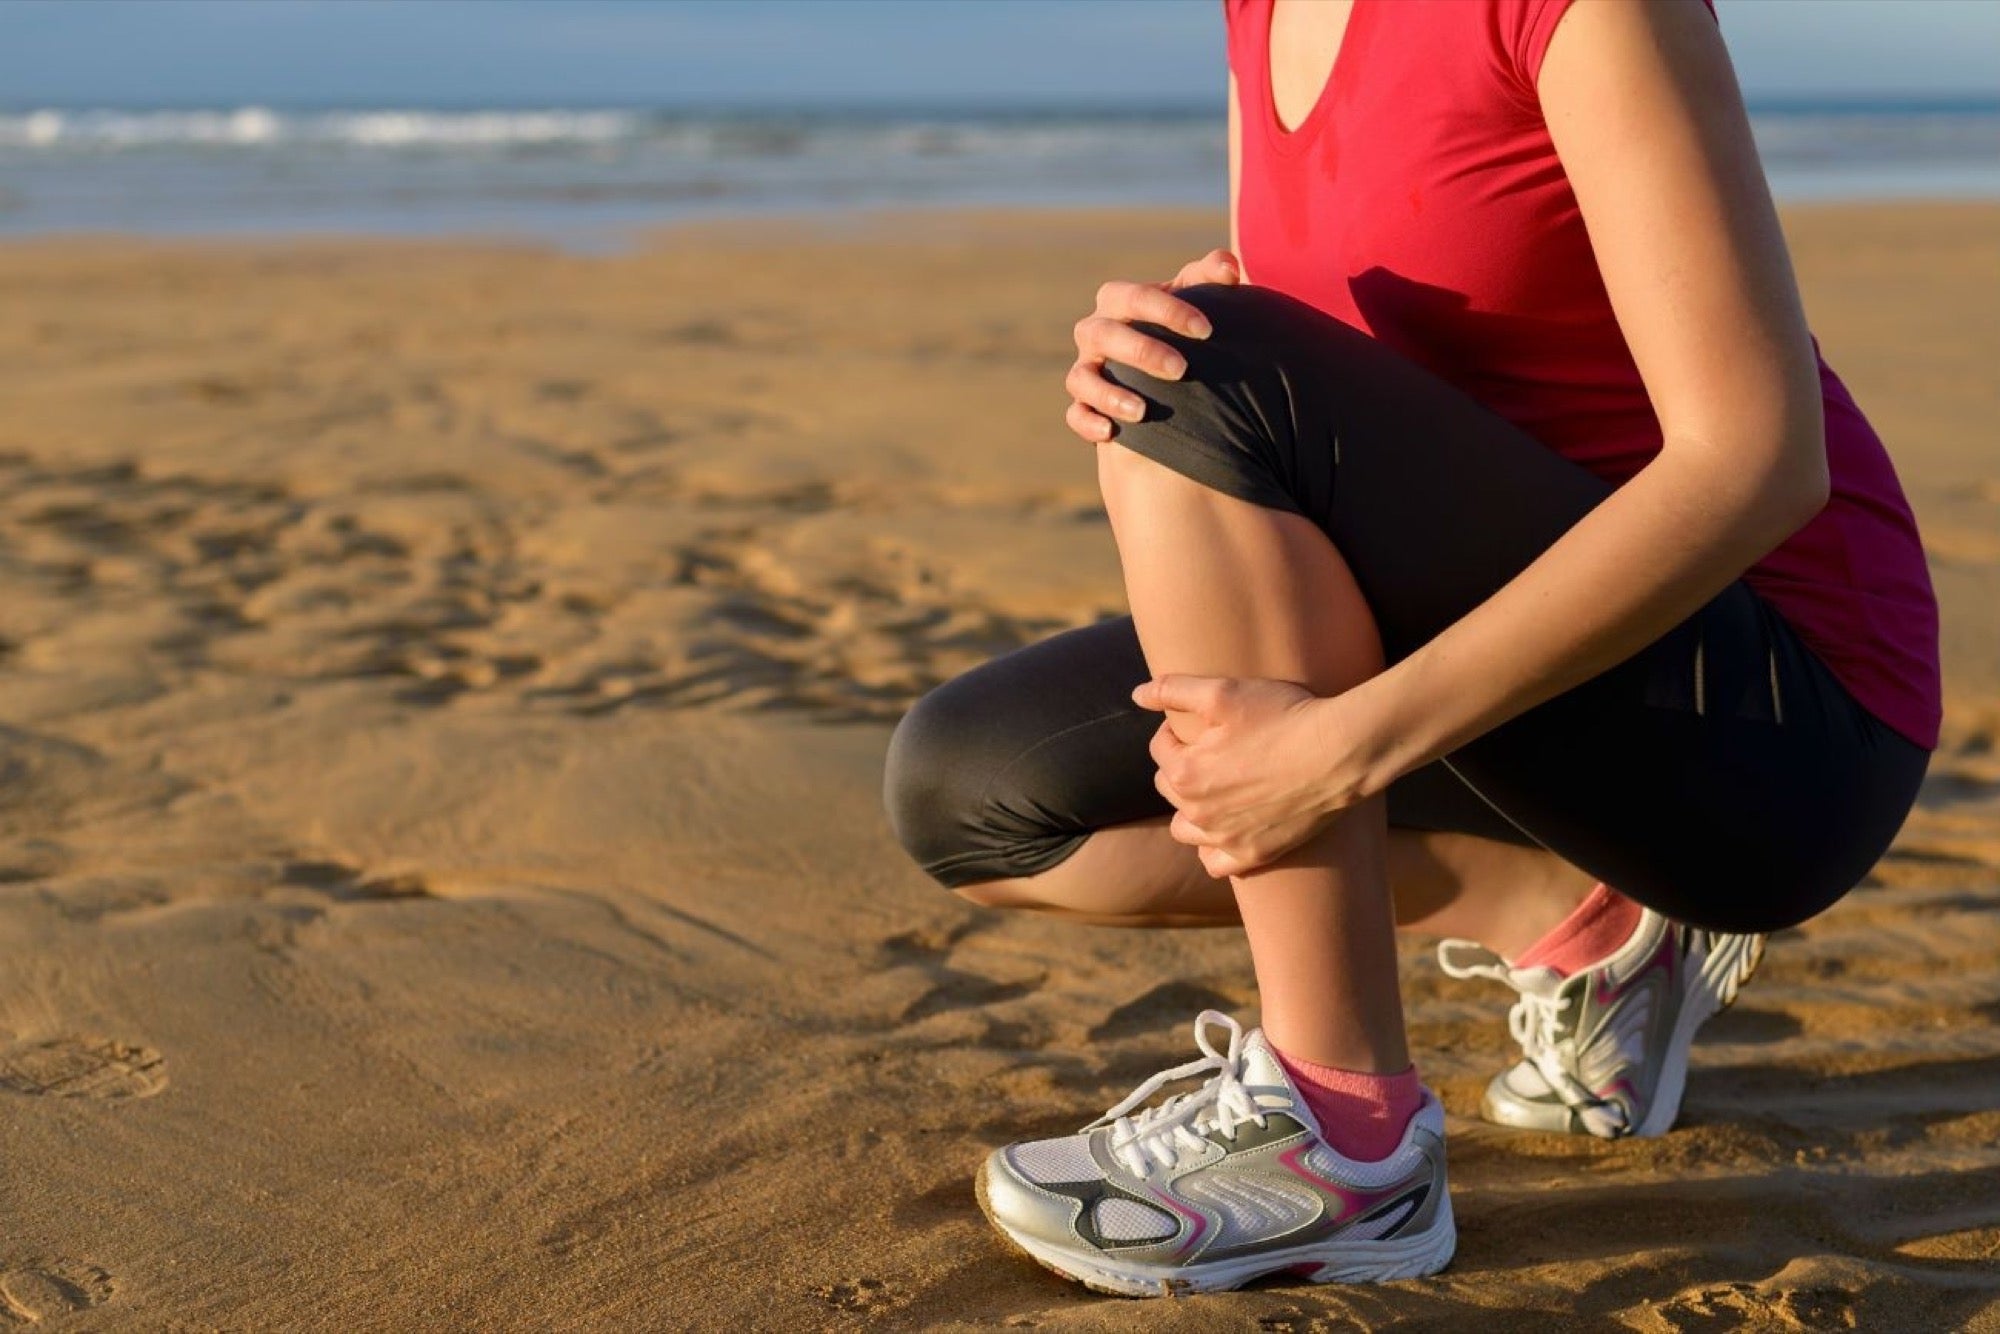 Ejercicios para artrosis de rodilla | ¿Puedo hacer ejercicio si tengo artrosis de rodilla?